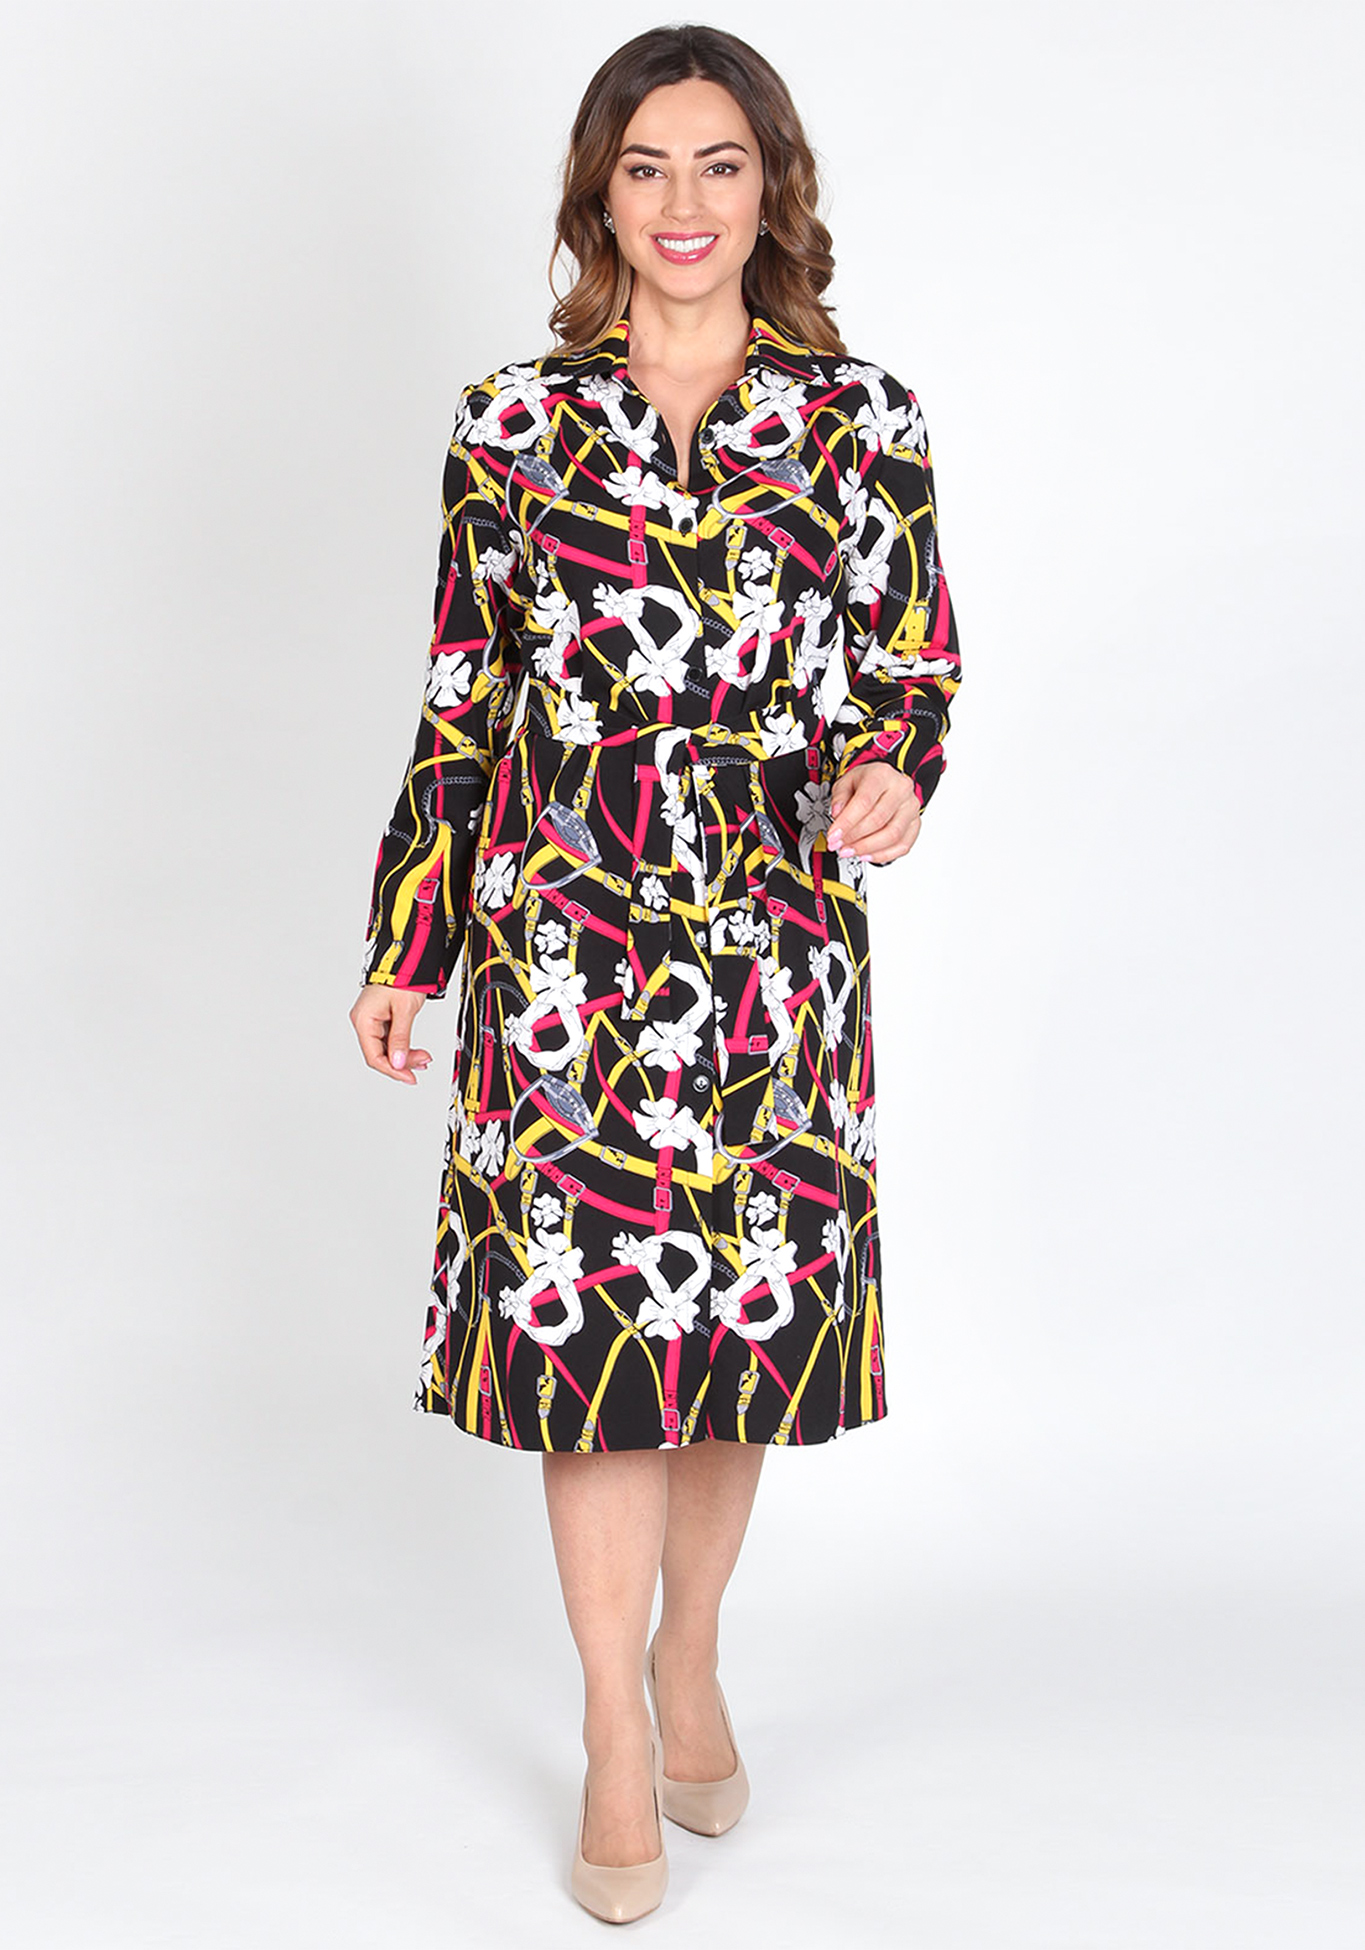 Платье-трансформер «Шик-модерн» Kumar collection, размер 50, цвет черный мультиколор - фото 4